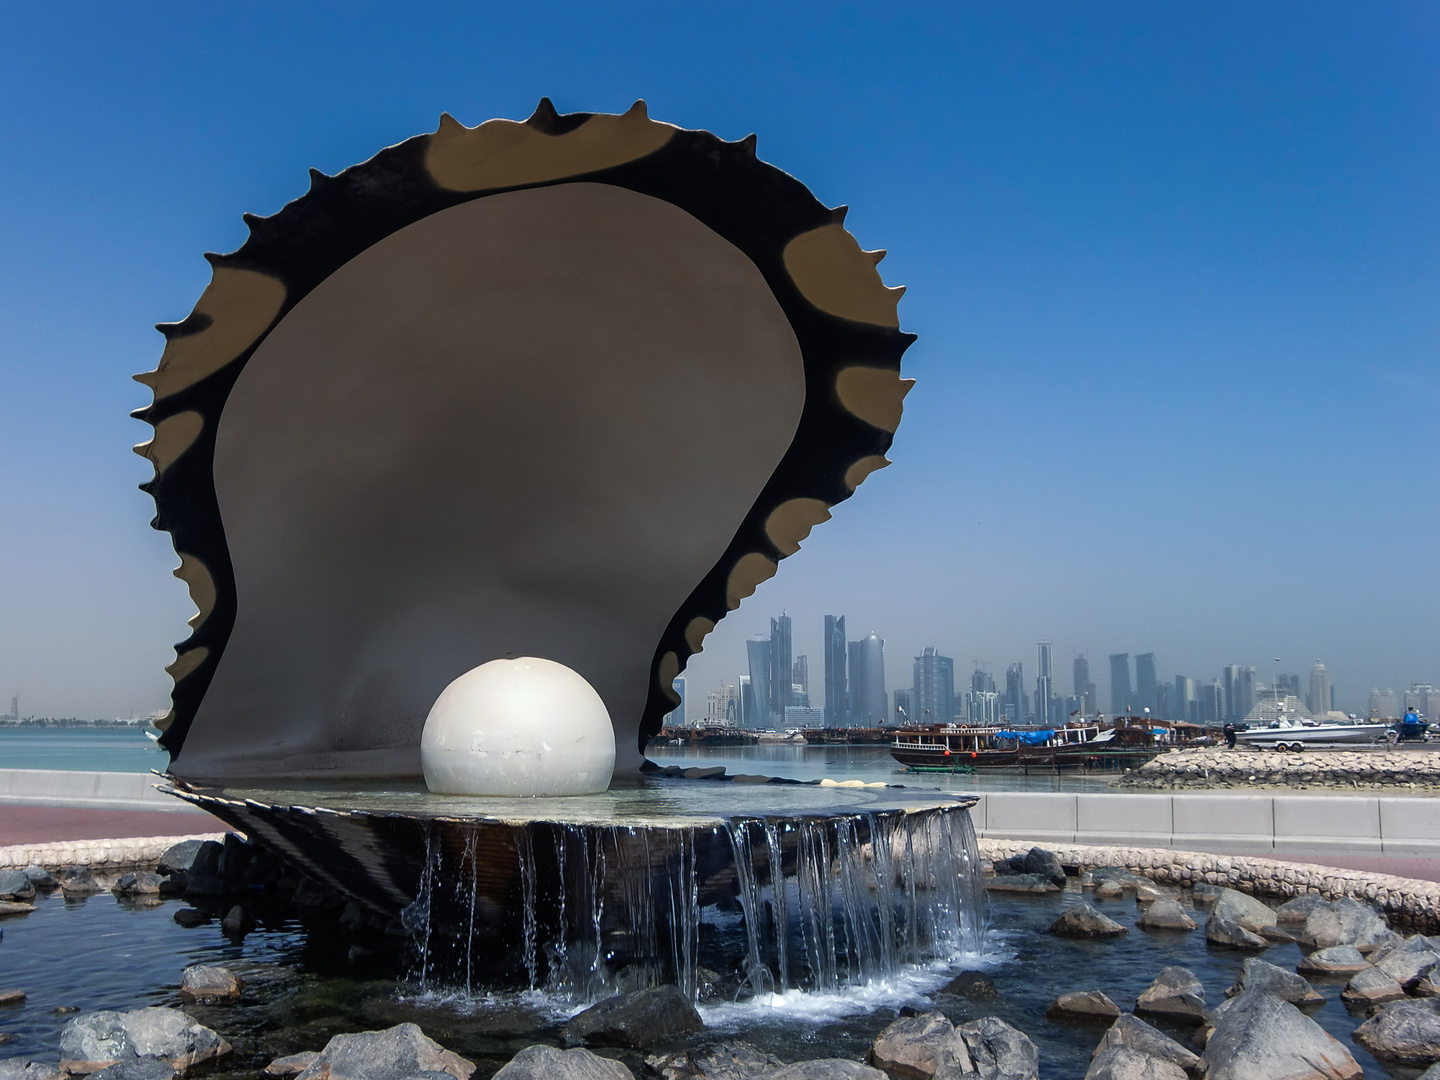 Pearl of Qatar at the Corniche